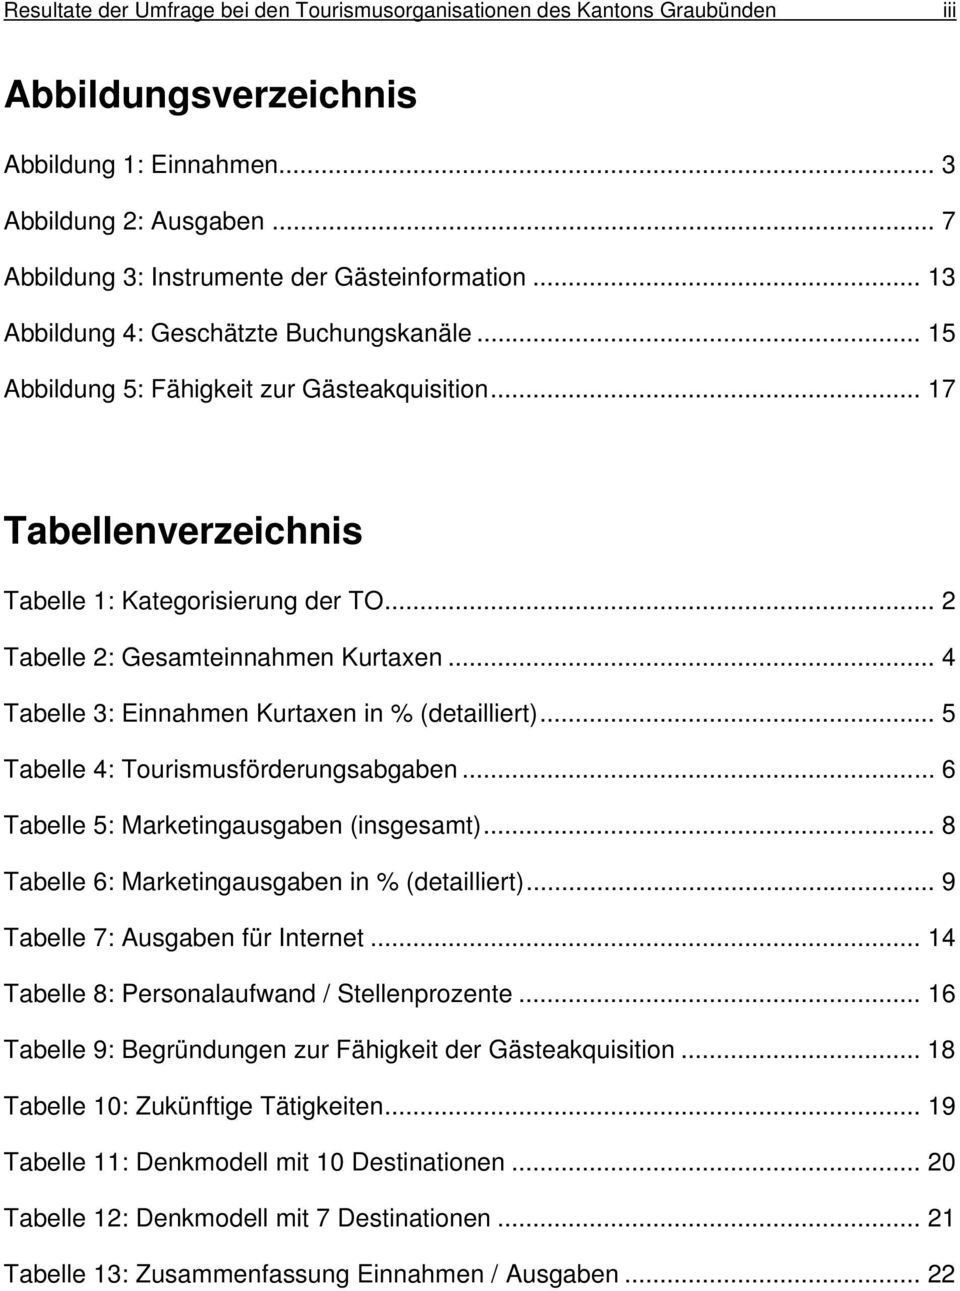 .. 17 Tabellenverzeichnis Tabelle 1: Kategorisierung der TO... 2 Tabelle 2: Gesamteinnahmen Kurtaxen... 4 Tabelle 3: Einnahmen Kurtaxen in % (detailliert)... 5 Tabelle 4: Tourismusförderungsabgaben.